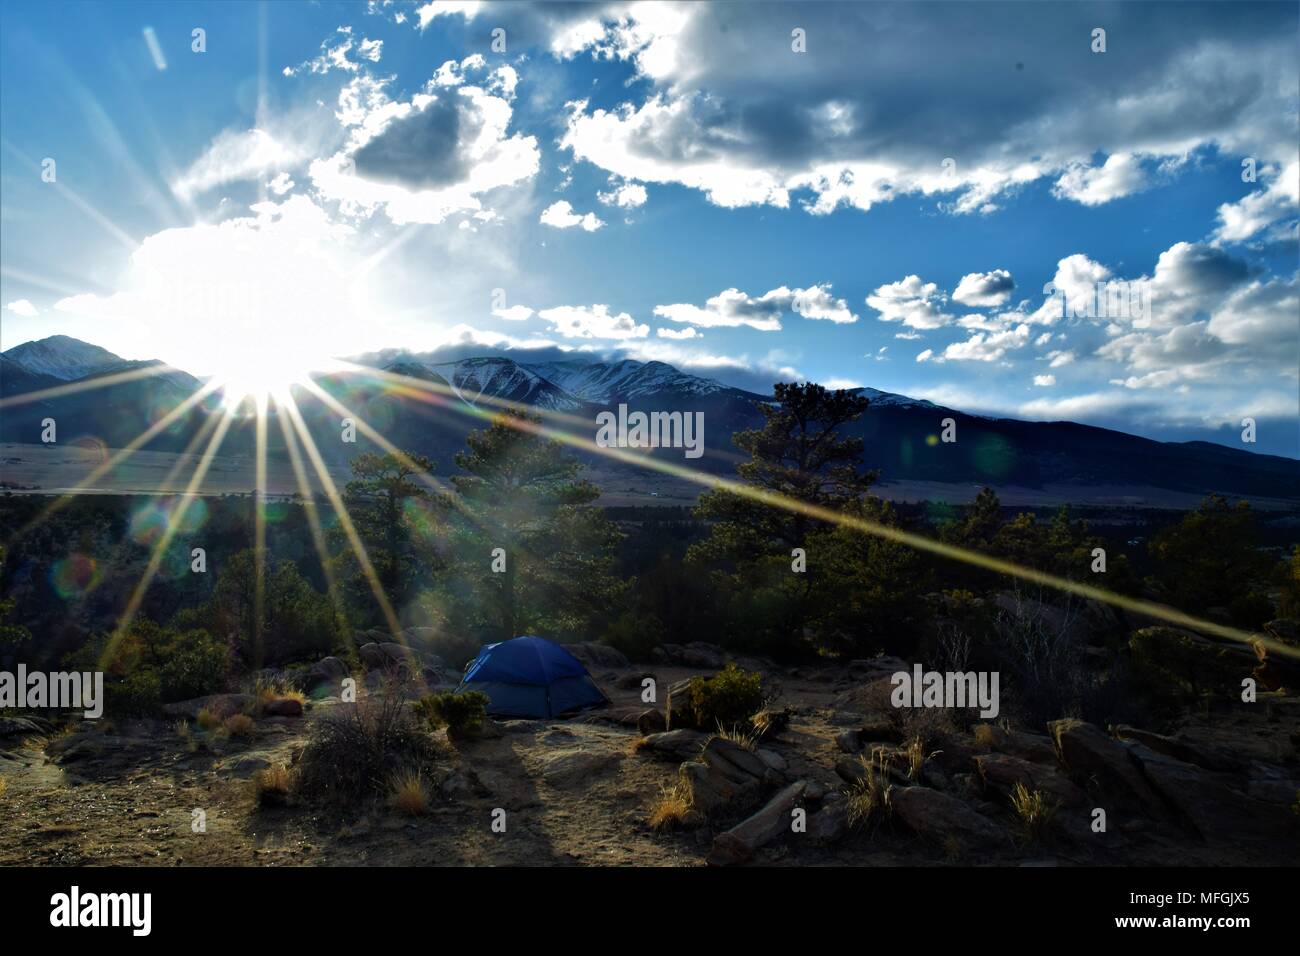 Les rayons du soleil plus de camping avec tente et les montagnes au loin. Prises à Buena Vista, Colorado. Banque D'Images